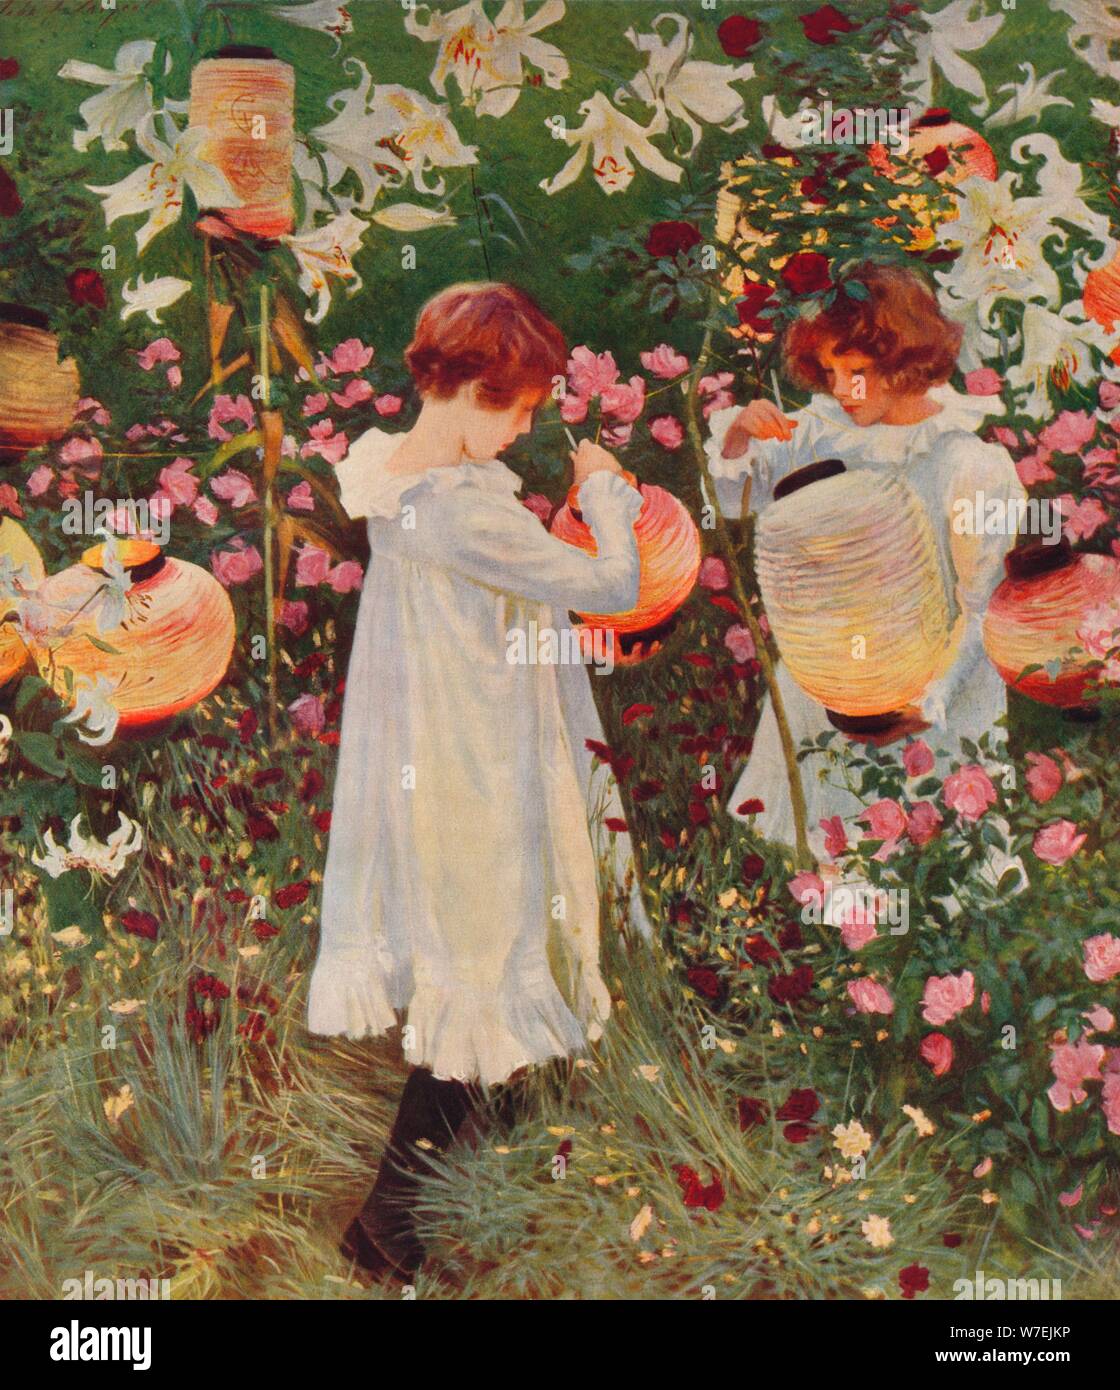 Nelke, Lilie, Lilie, Rose, 1885 / 86, (1938). Künstler: John Singer Sargent  Stockfotografie - Alamy